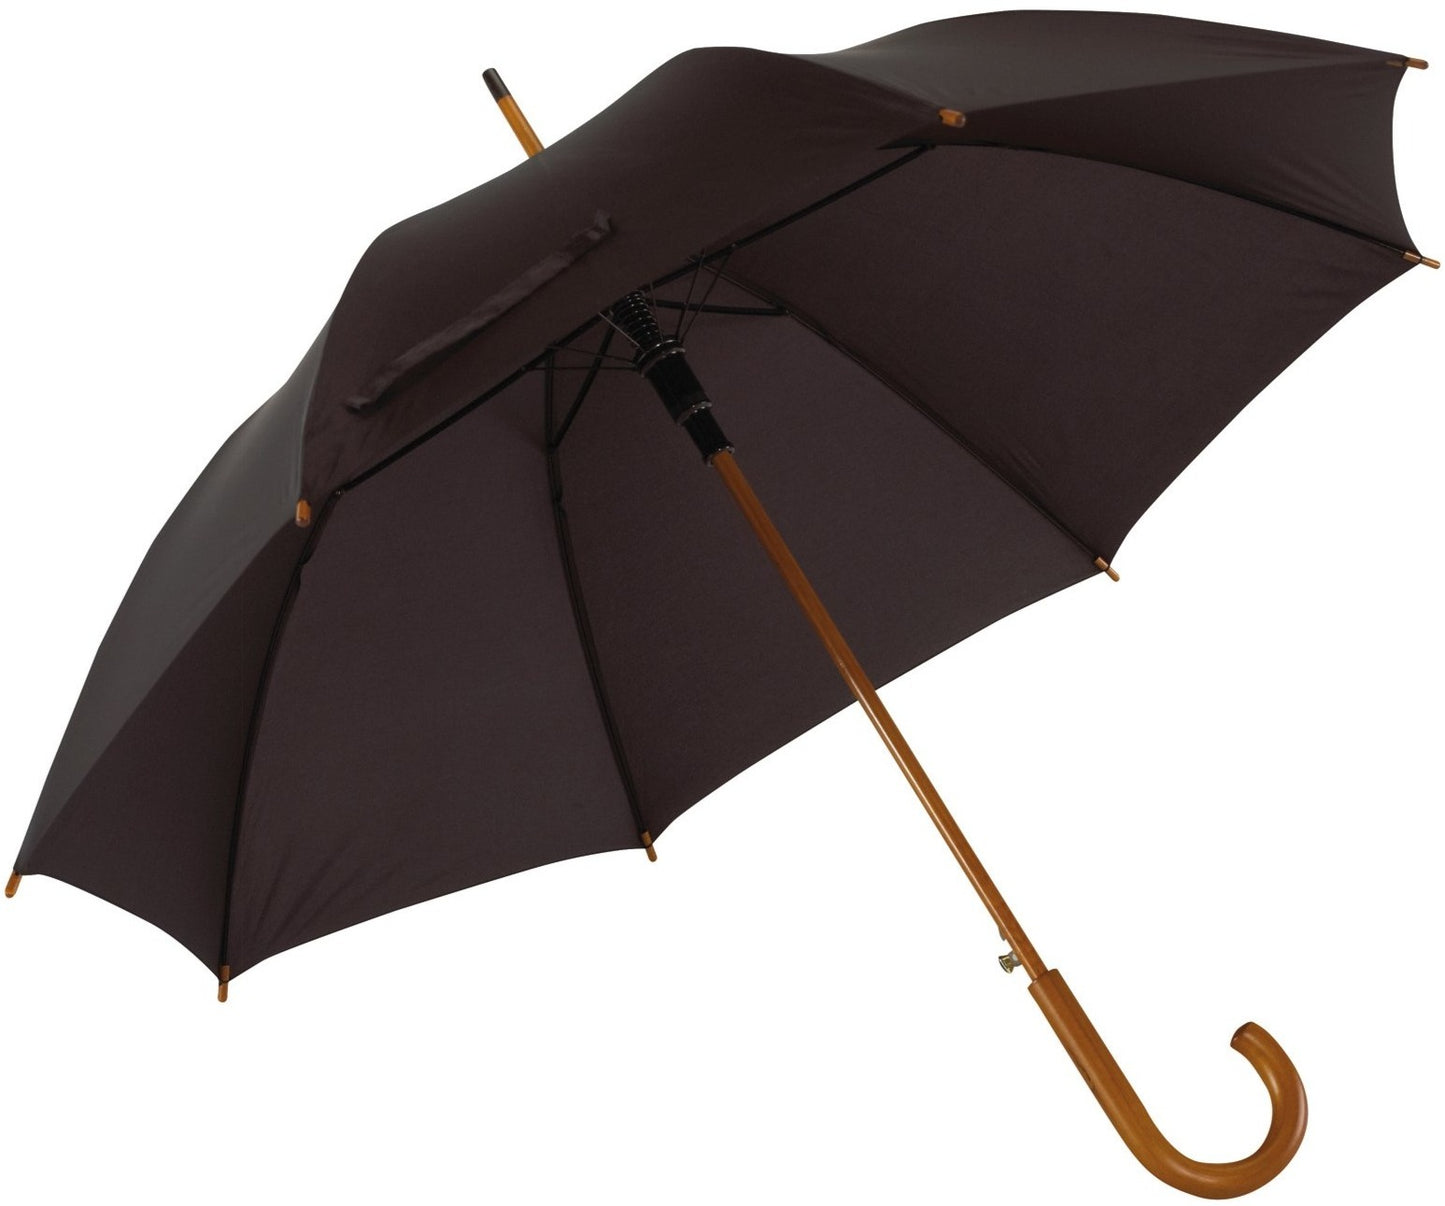 Μαύρη ομπρέλα βροχής, αυτόματη, με ξύλινη κυρτή λαβή.